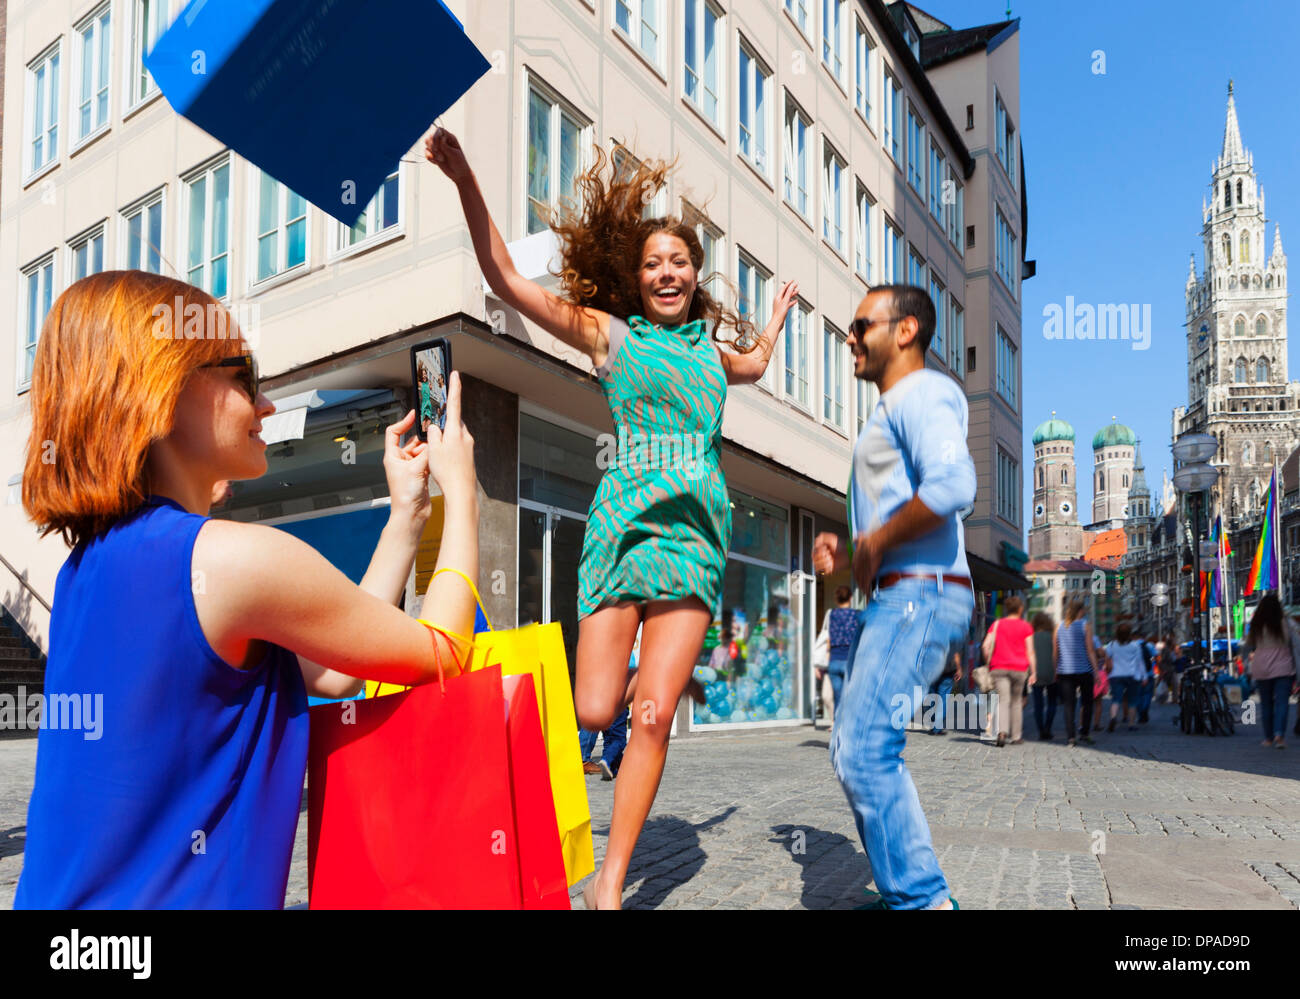 Femme sautant avec panier à Munich Marienplatz, Munich, Allemagne Banque D'Images